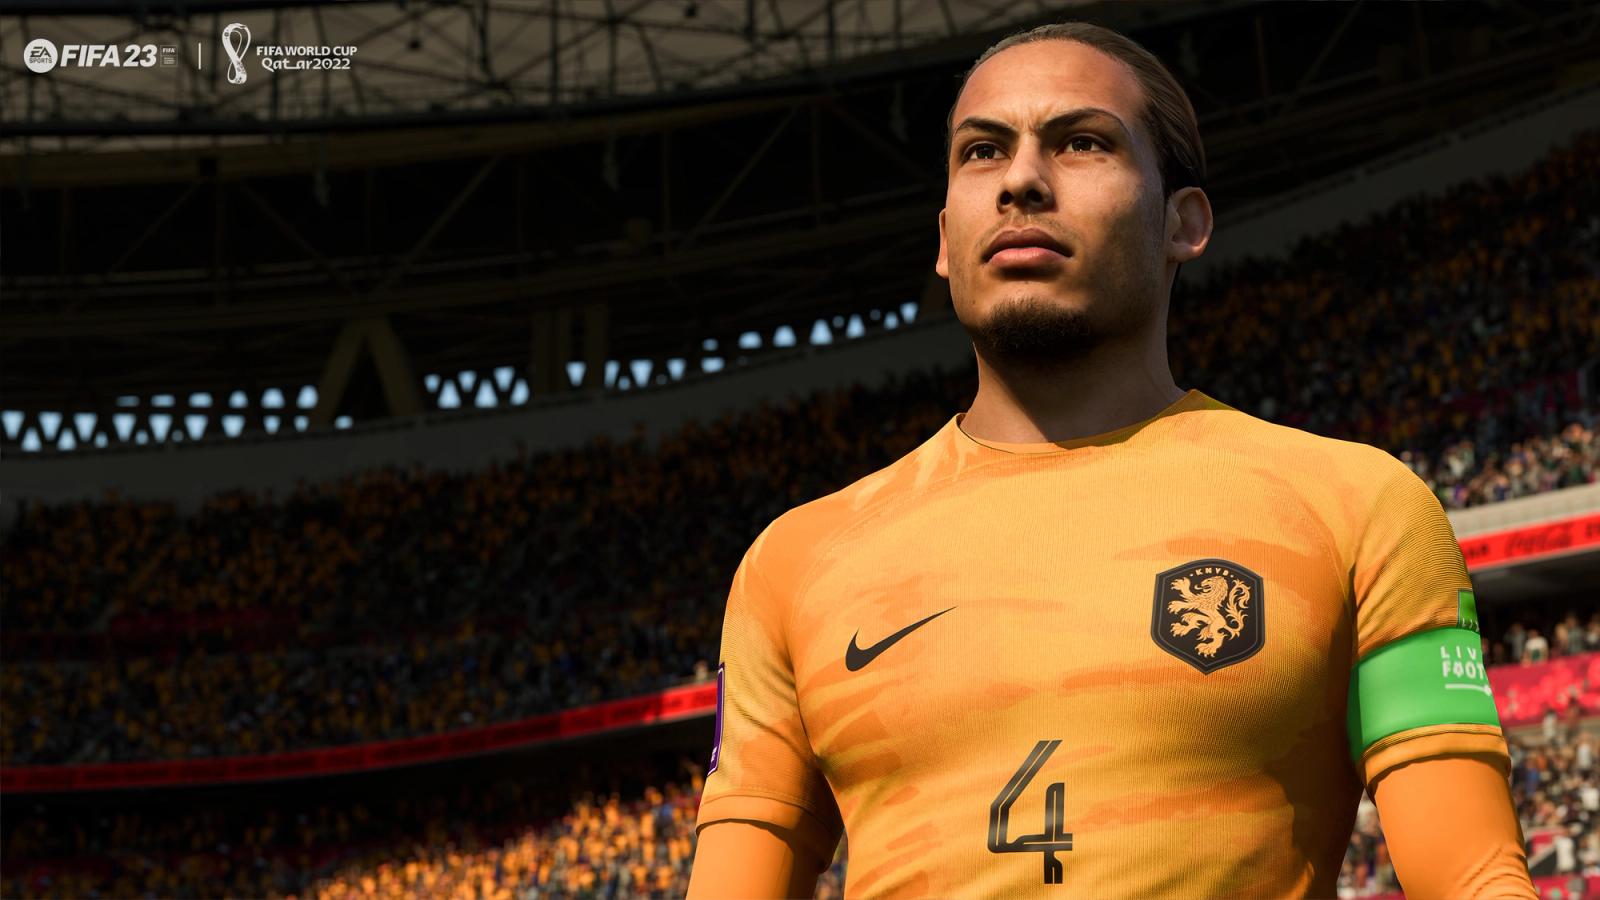 Virgil van Dijk in FIFA 23